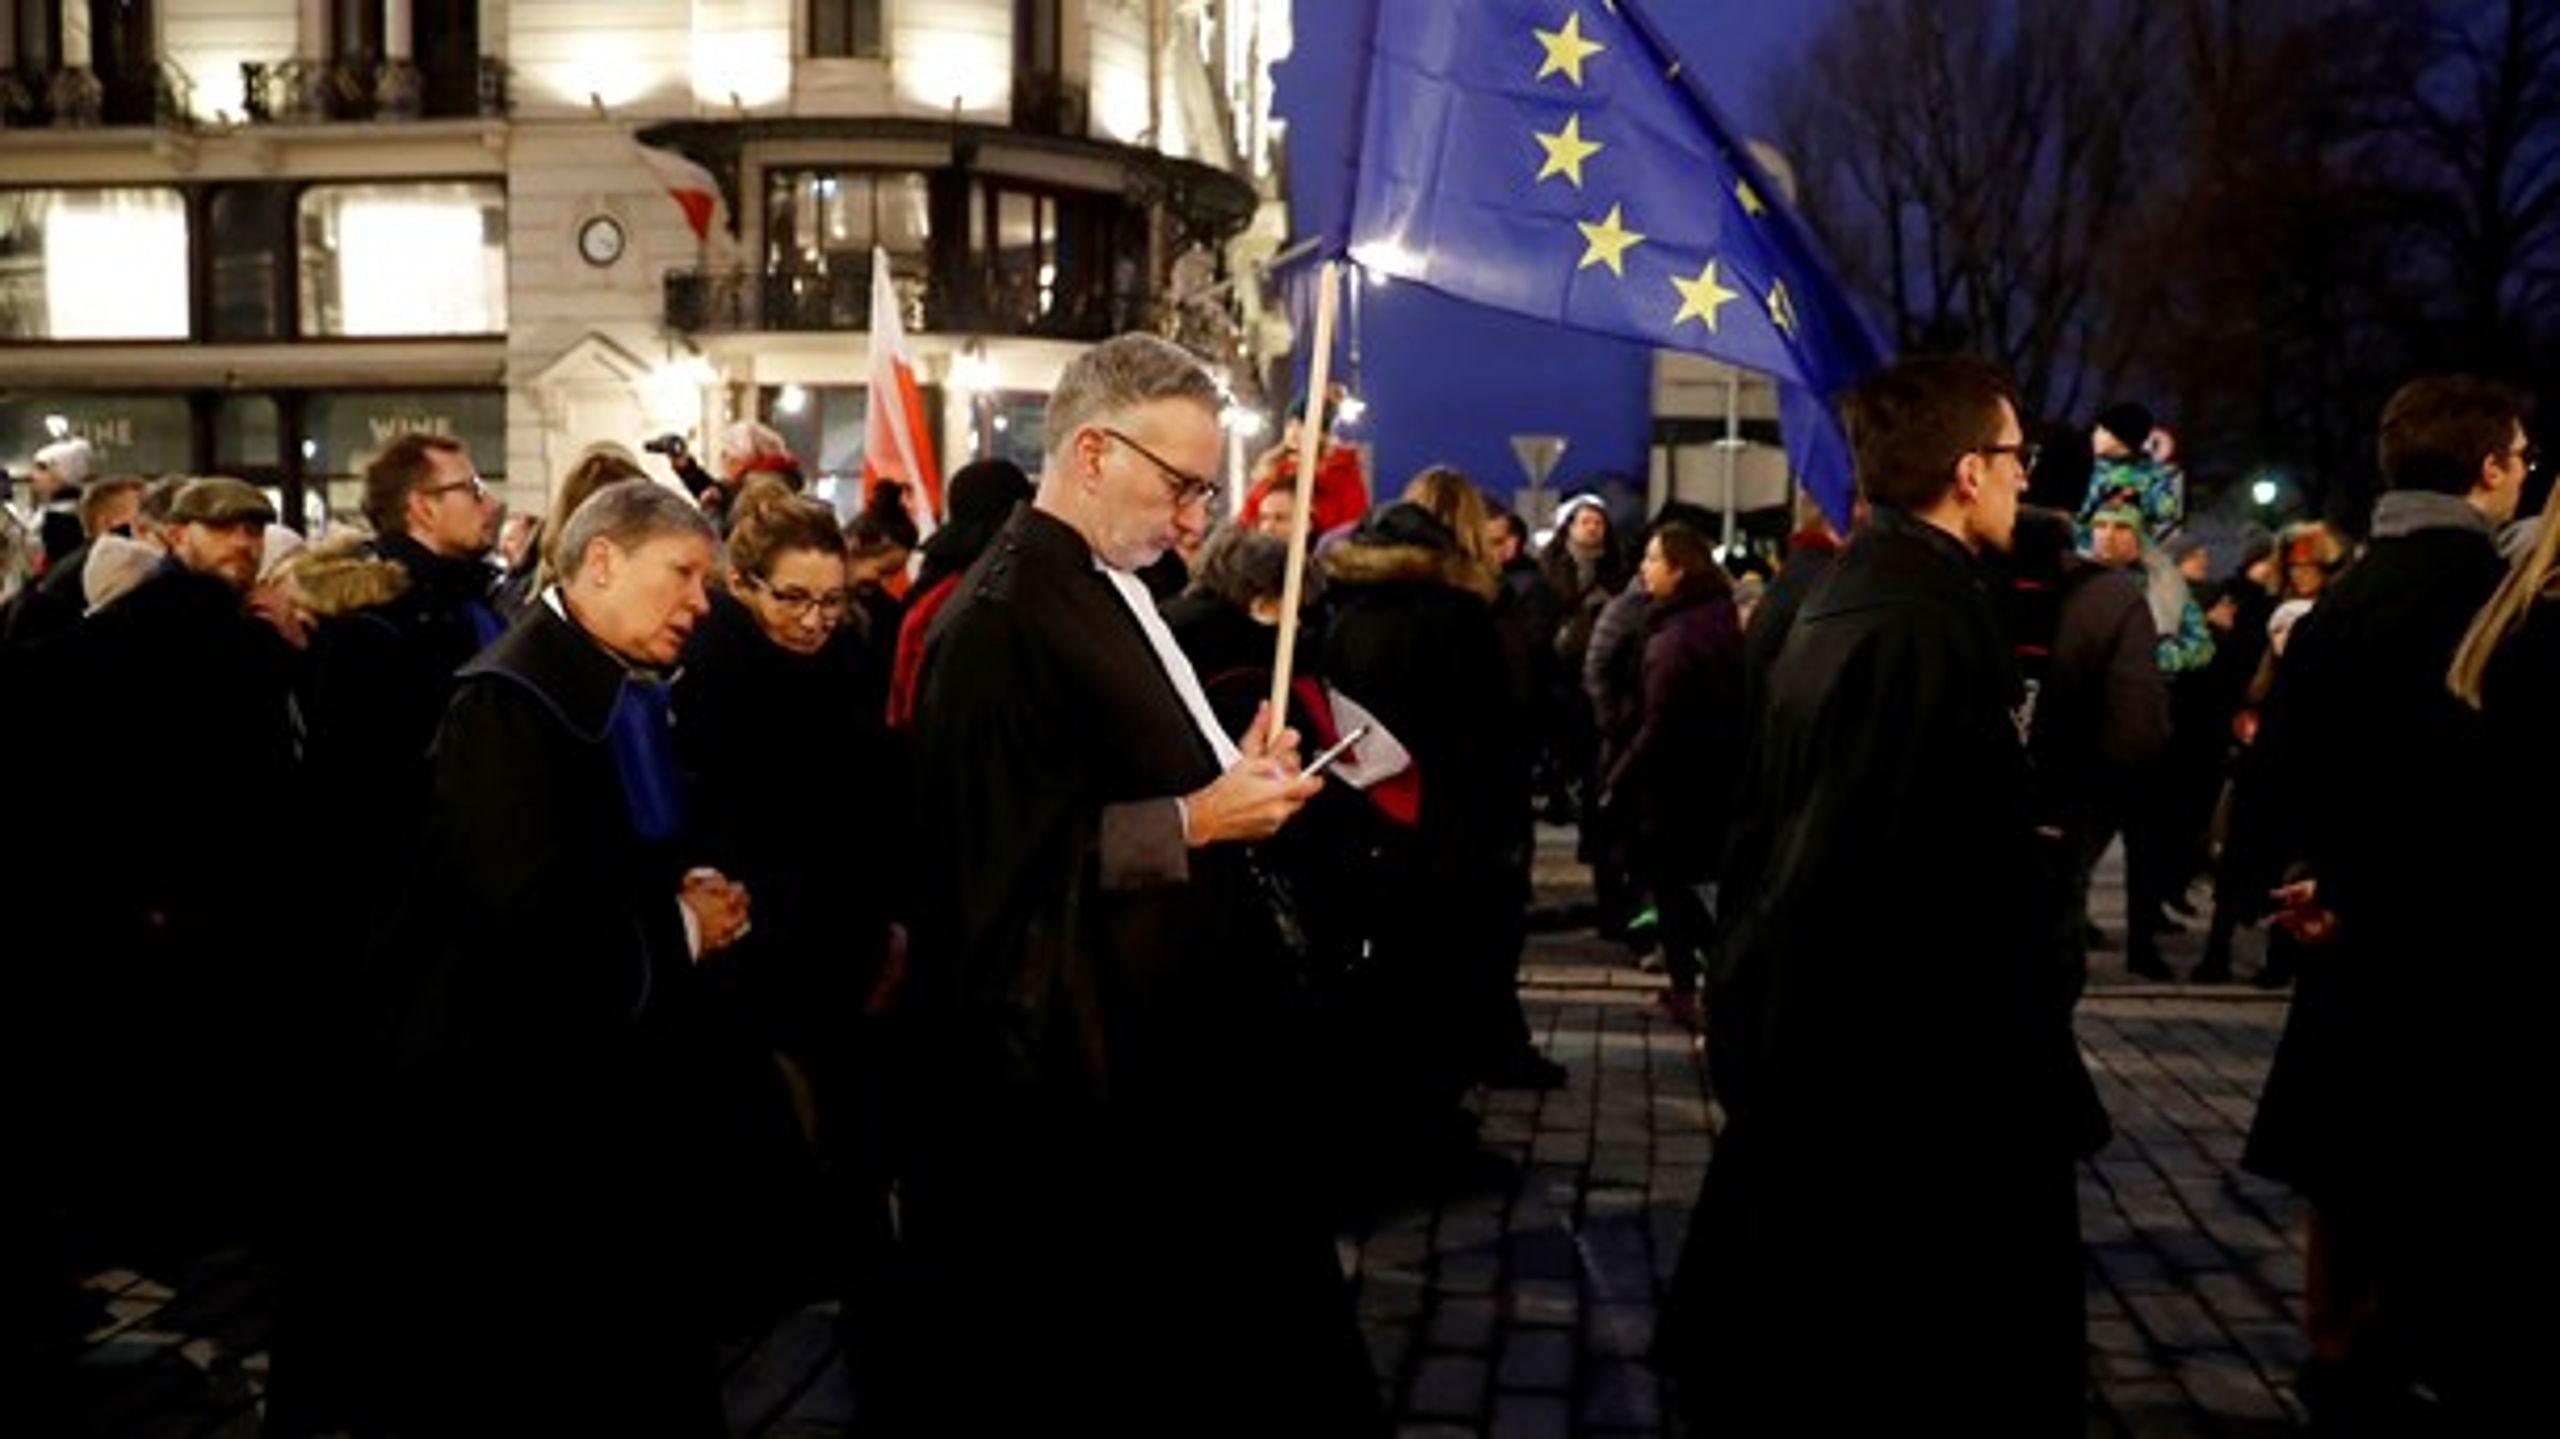 Dommere fra hele Europa demonstrerede 11. januar&nbsp;mod ”afviklingen af retsstaten ” i Polen. Men indtil videre er grøfterne blot gravet dybere,&nbsp;skriver Vibe Termansen.